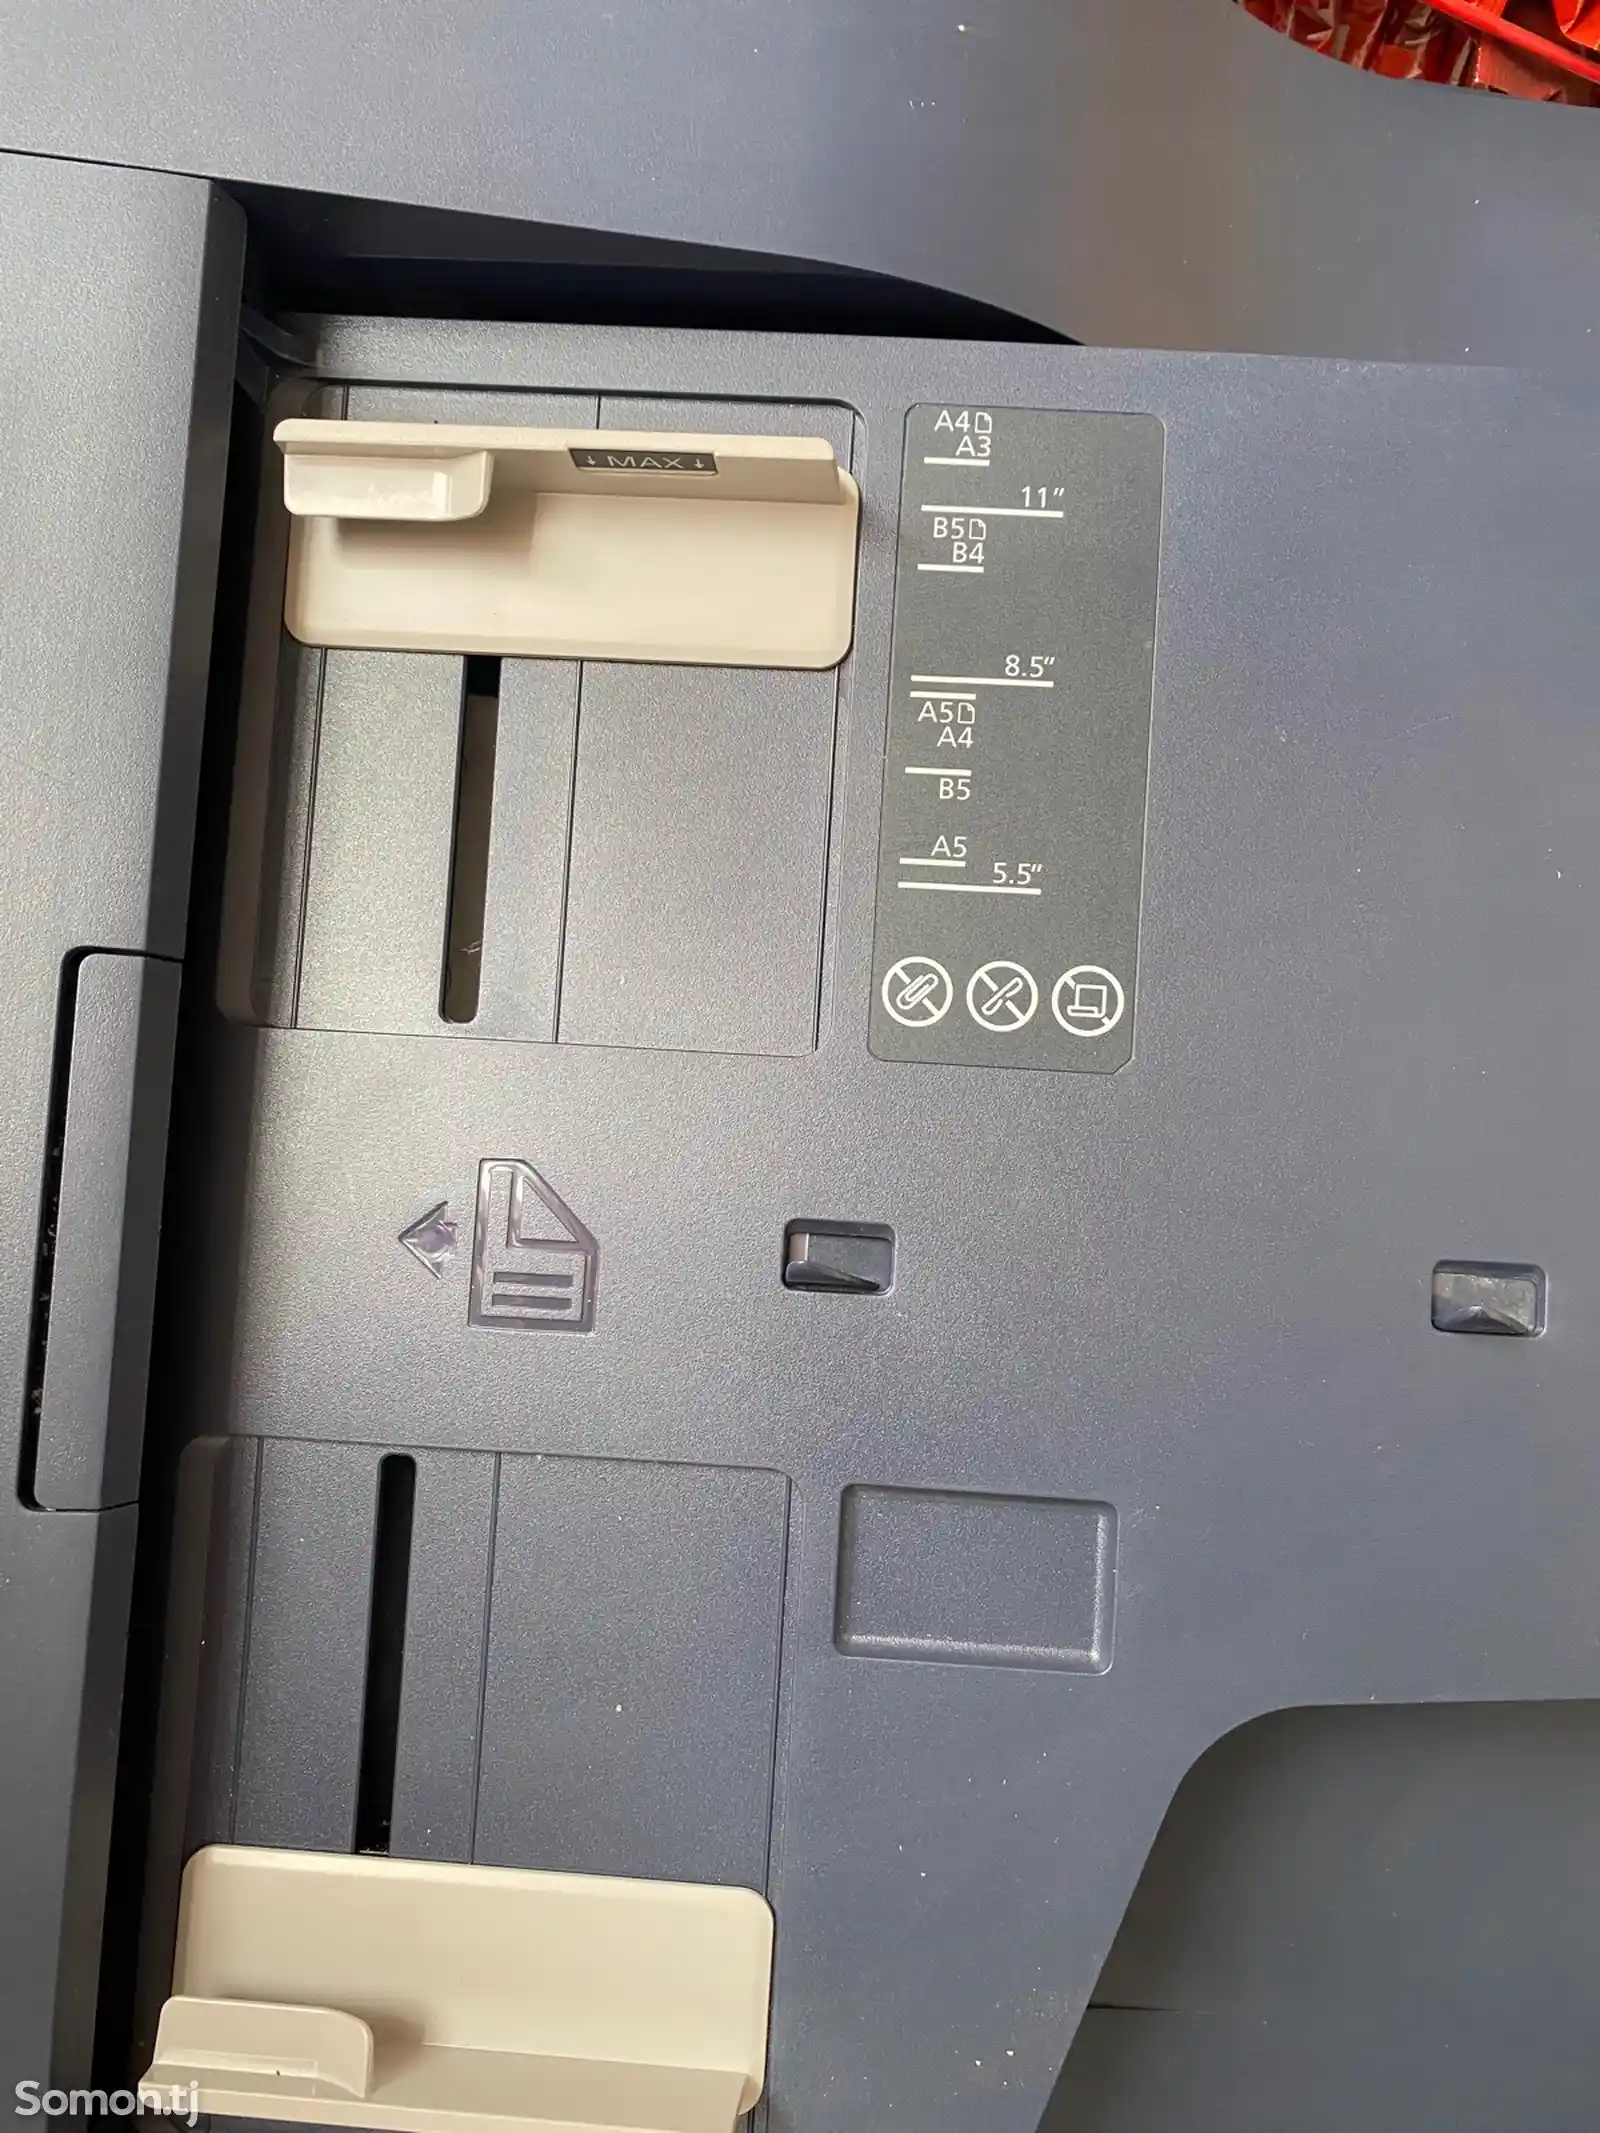 Копировальный аппарат 1025 Multifunction Printer-1